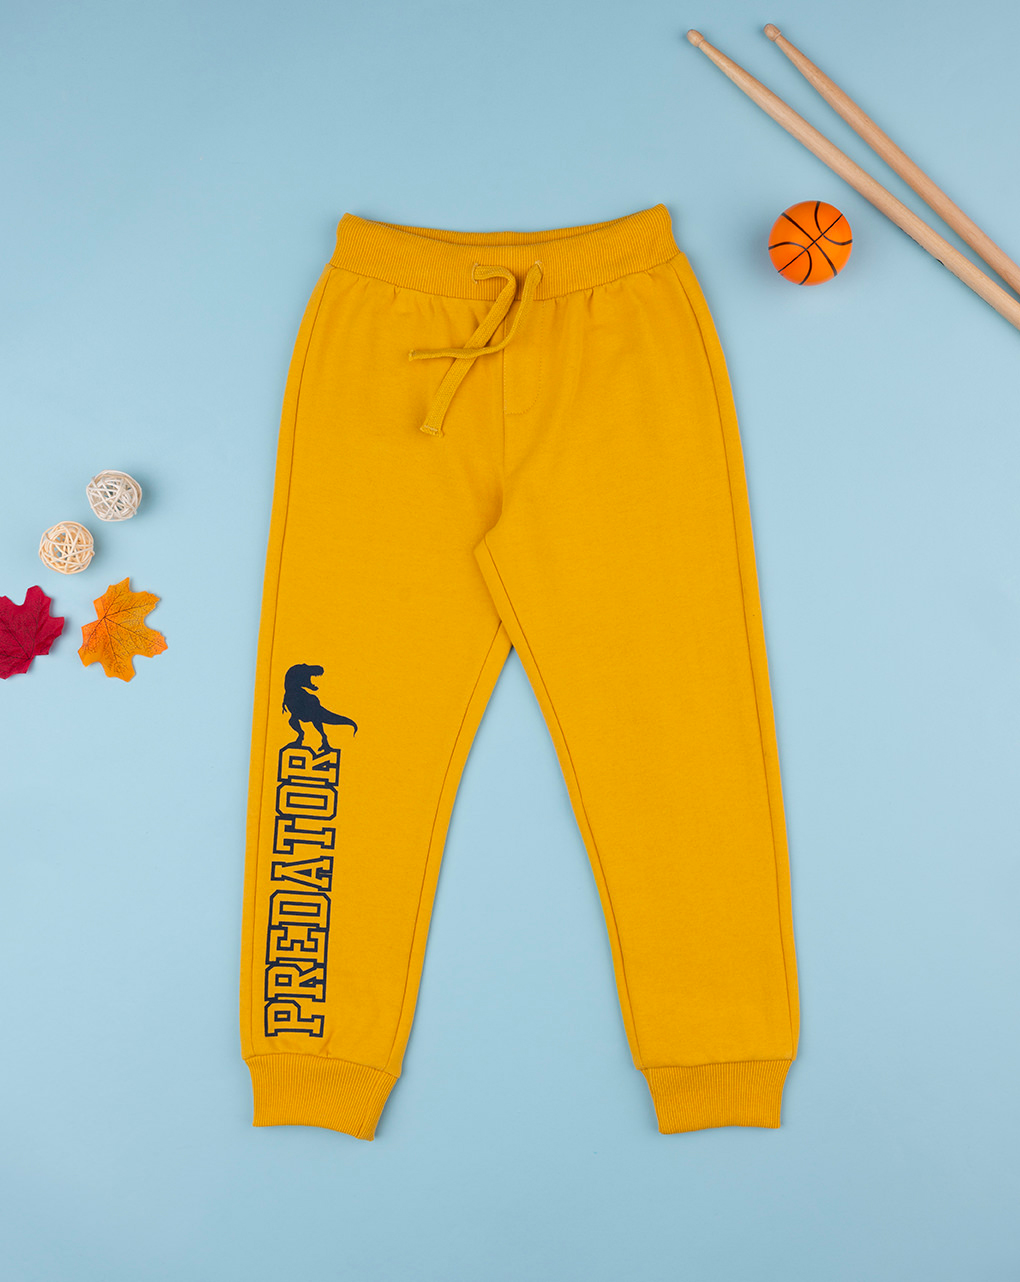 παιδικό παντελόνι φόρμας κίτρινο με δεινόσαυρο για αγόρι - Prénatal